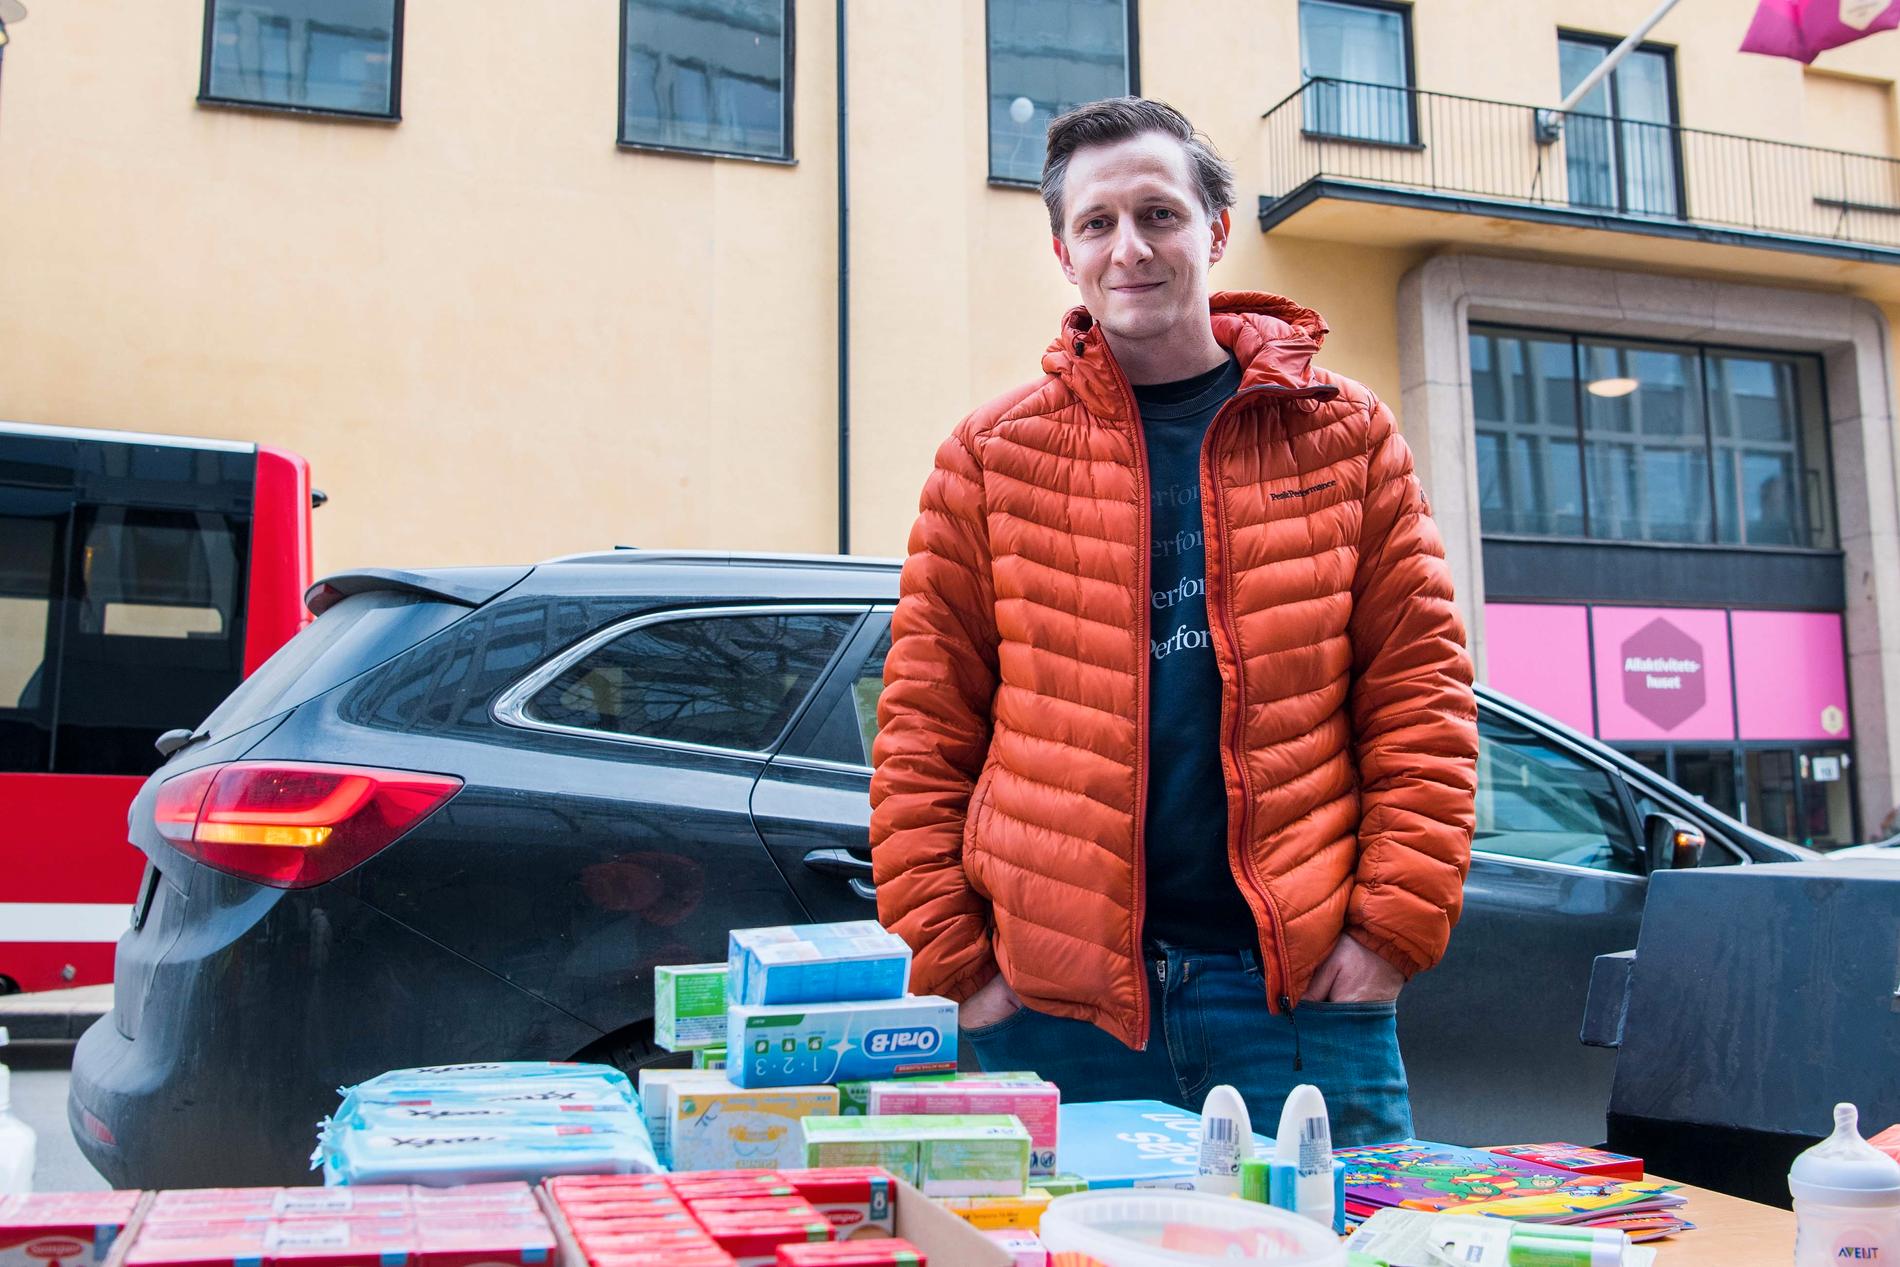 Mido Salkić delar ut hygienartiklar, leksaker och annat som personer från Strängnäs skänkt. 